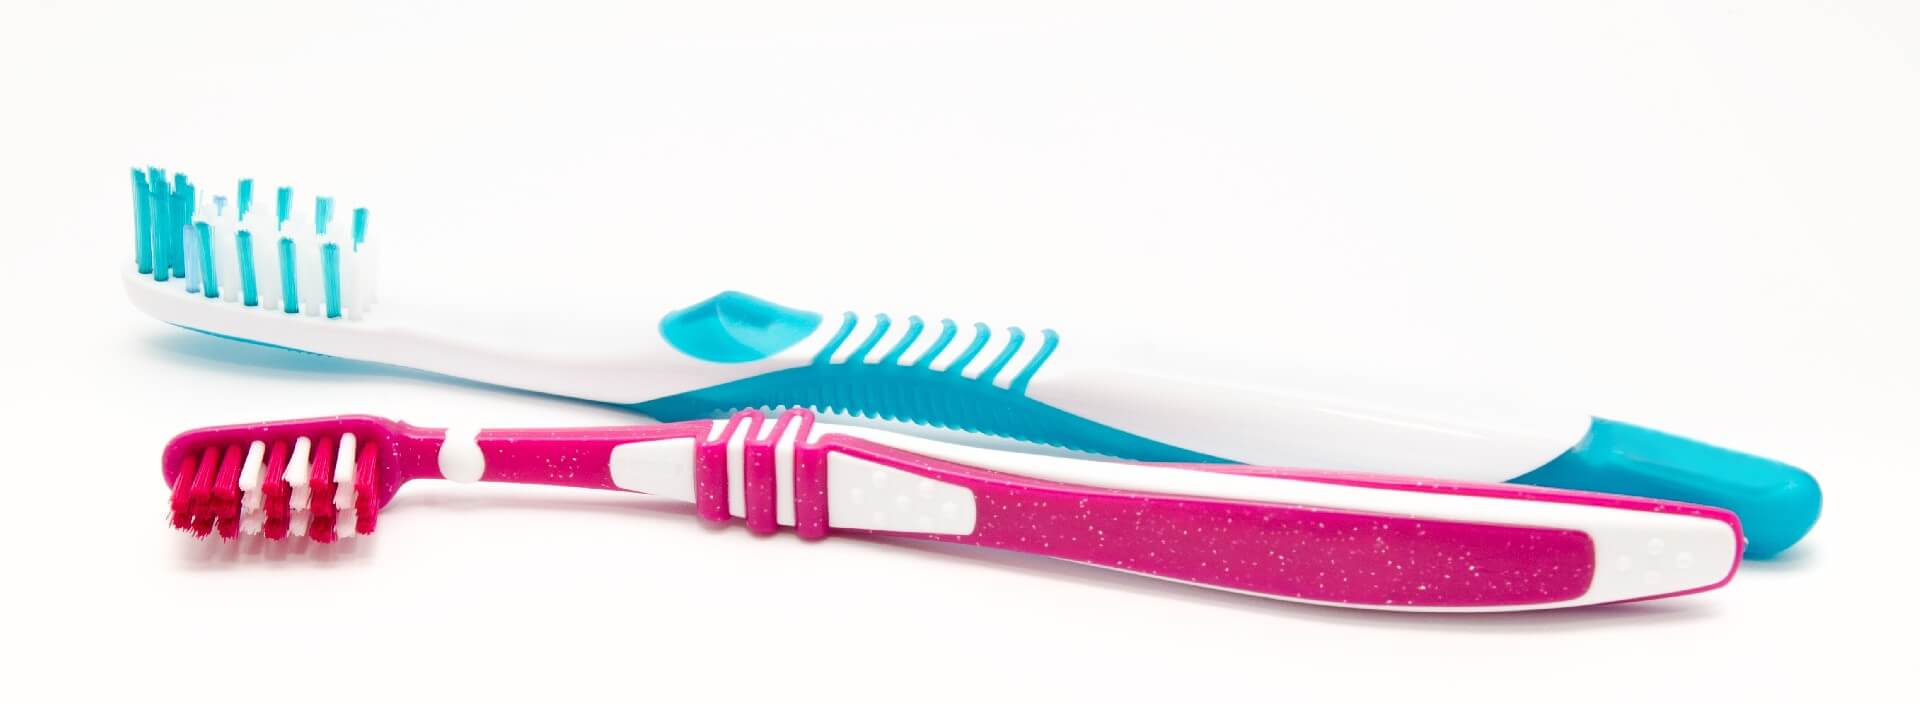 overmolded toothbrush handle.jpg